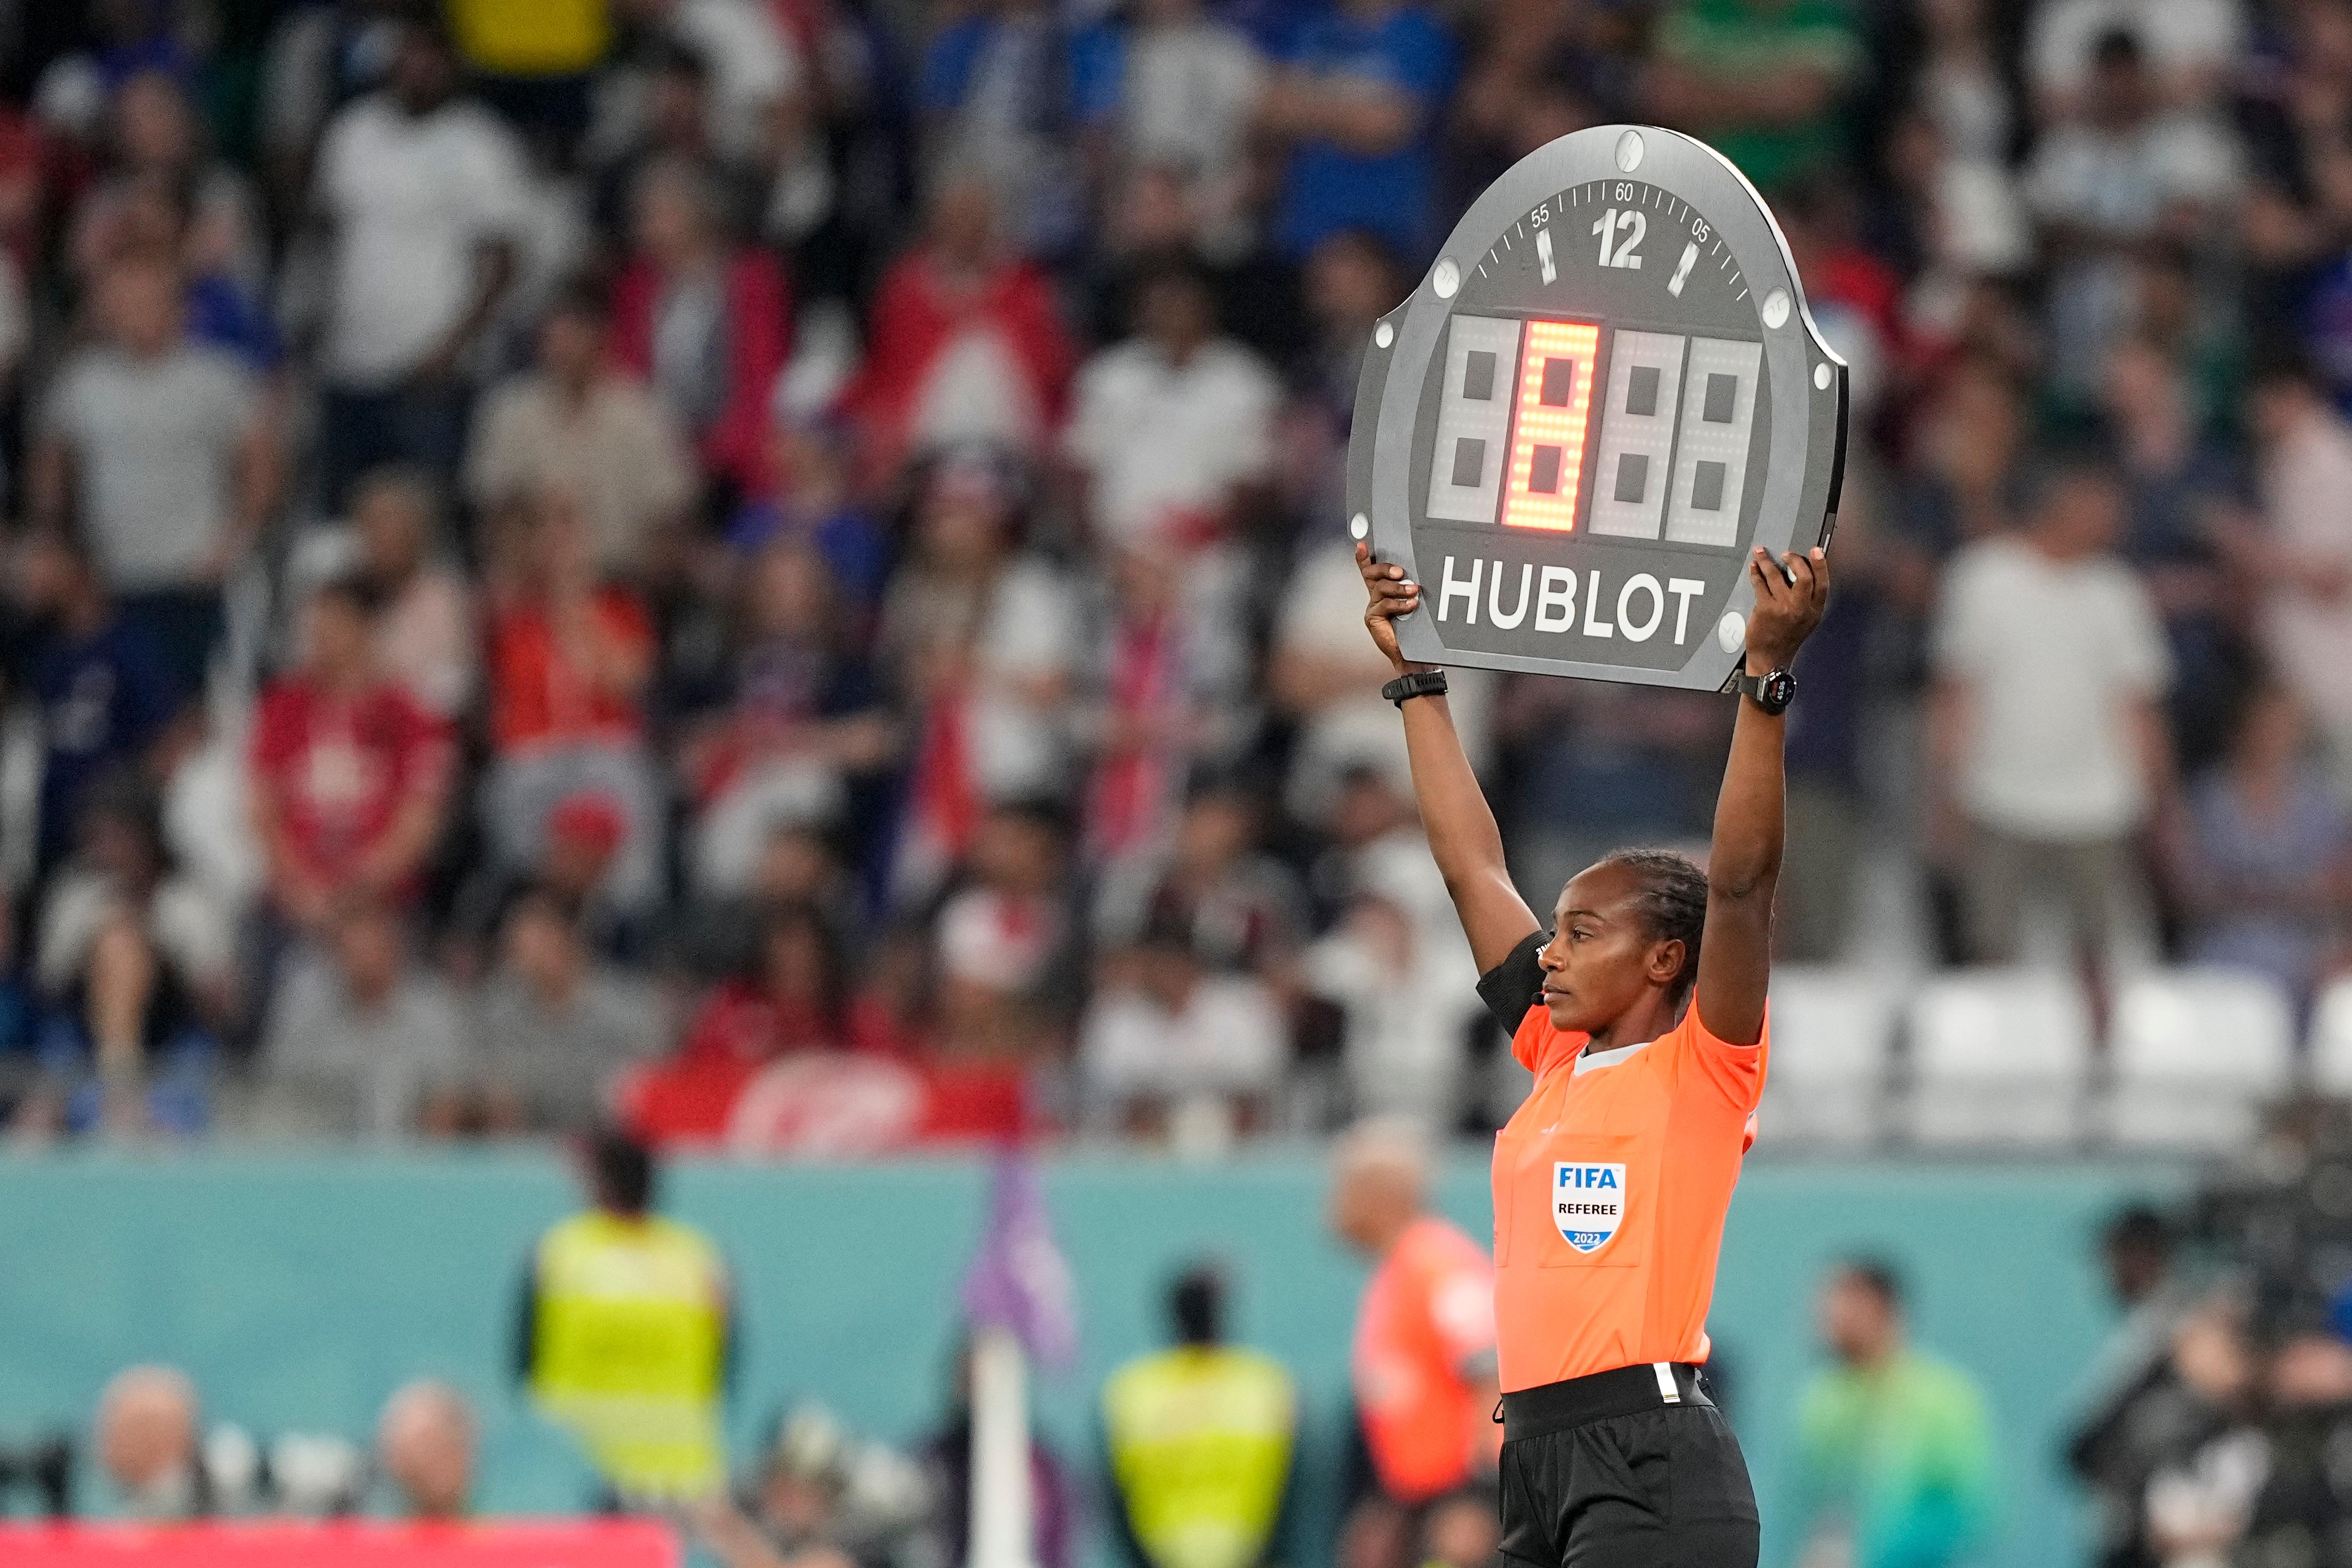 Fim dos 90 minutos? FIFA discute mudança no tempo dos jogos para 2024